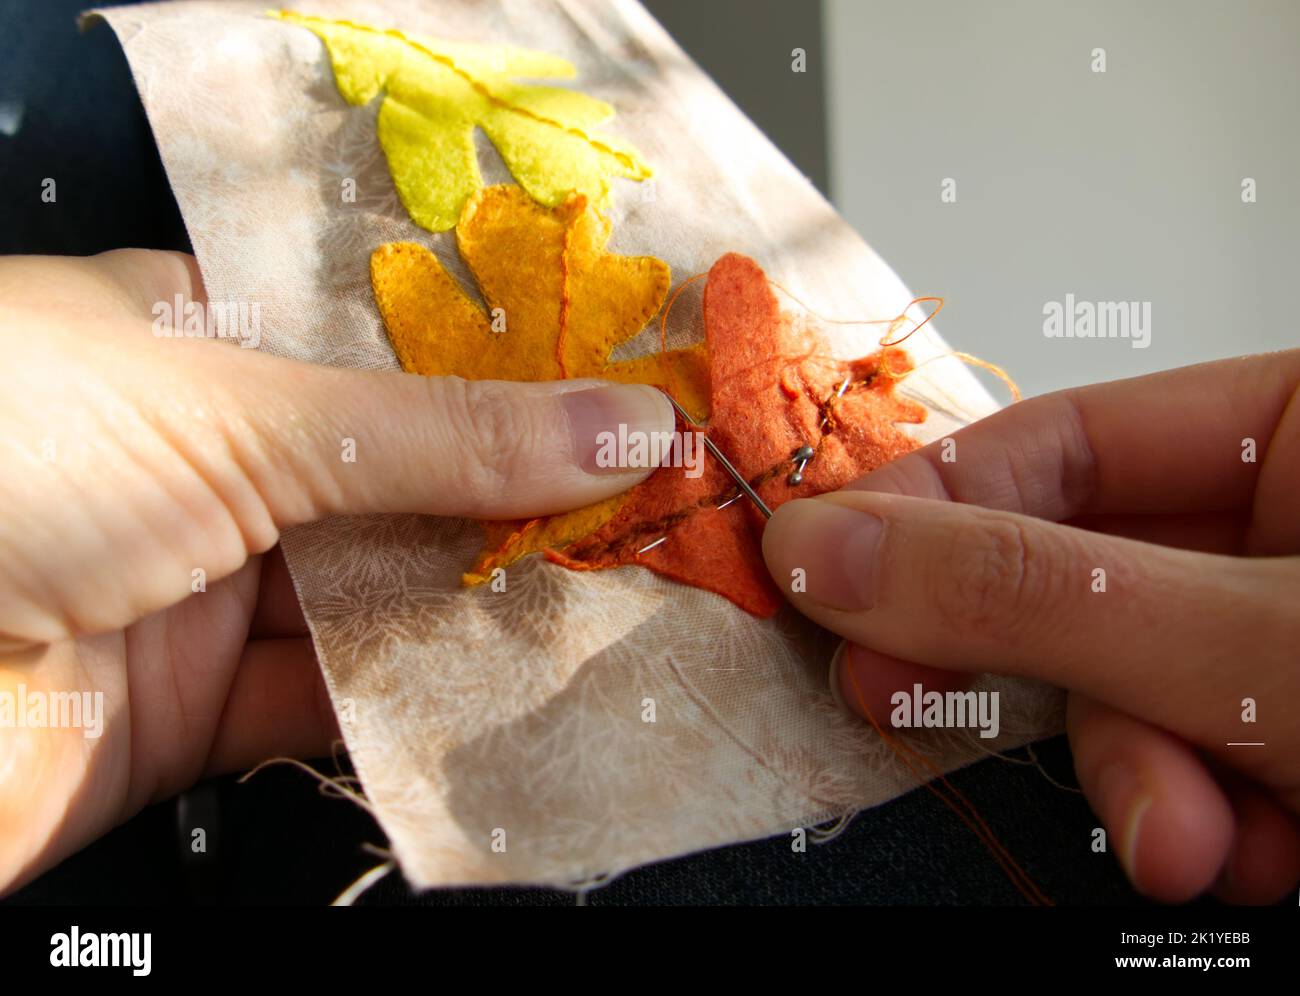 Nahaufnahme der Hände einer Frau, die näht, um appliqué-Arbeiten von Herbstblättern zu produzieren. Stockfoto